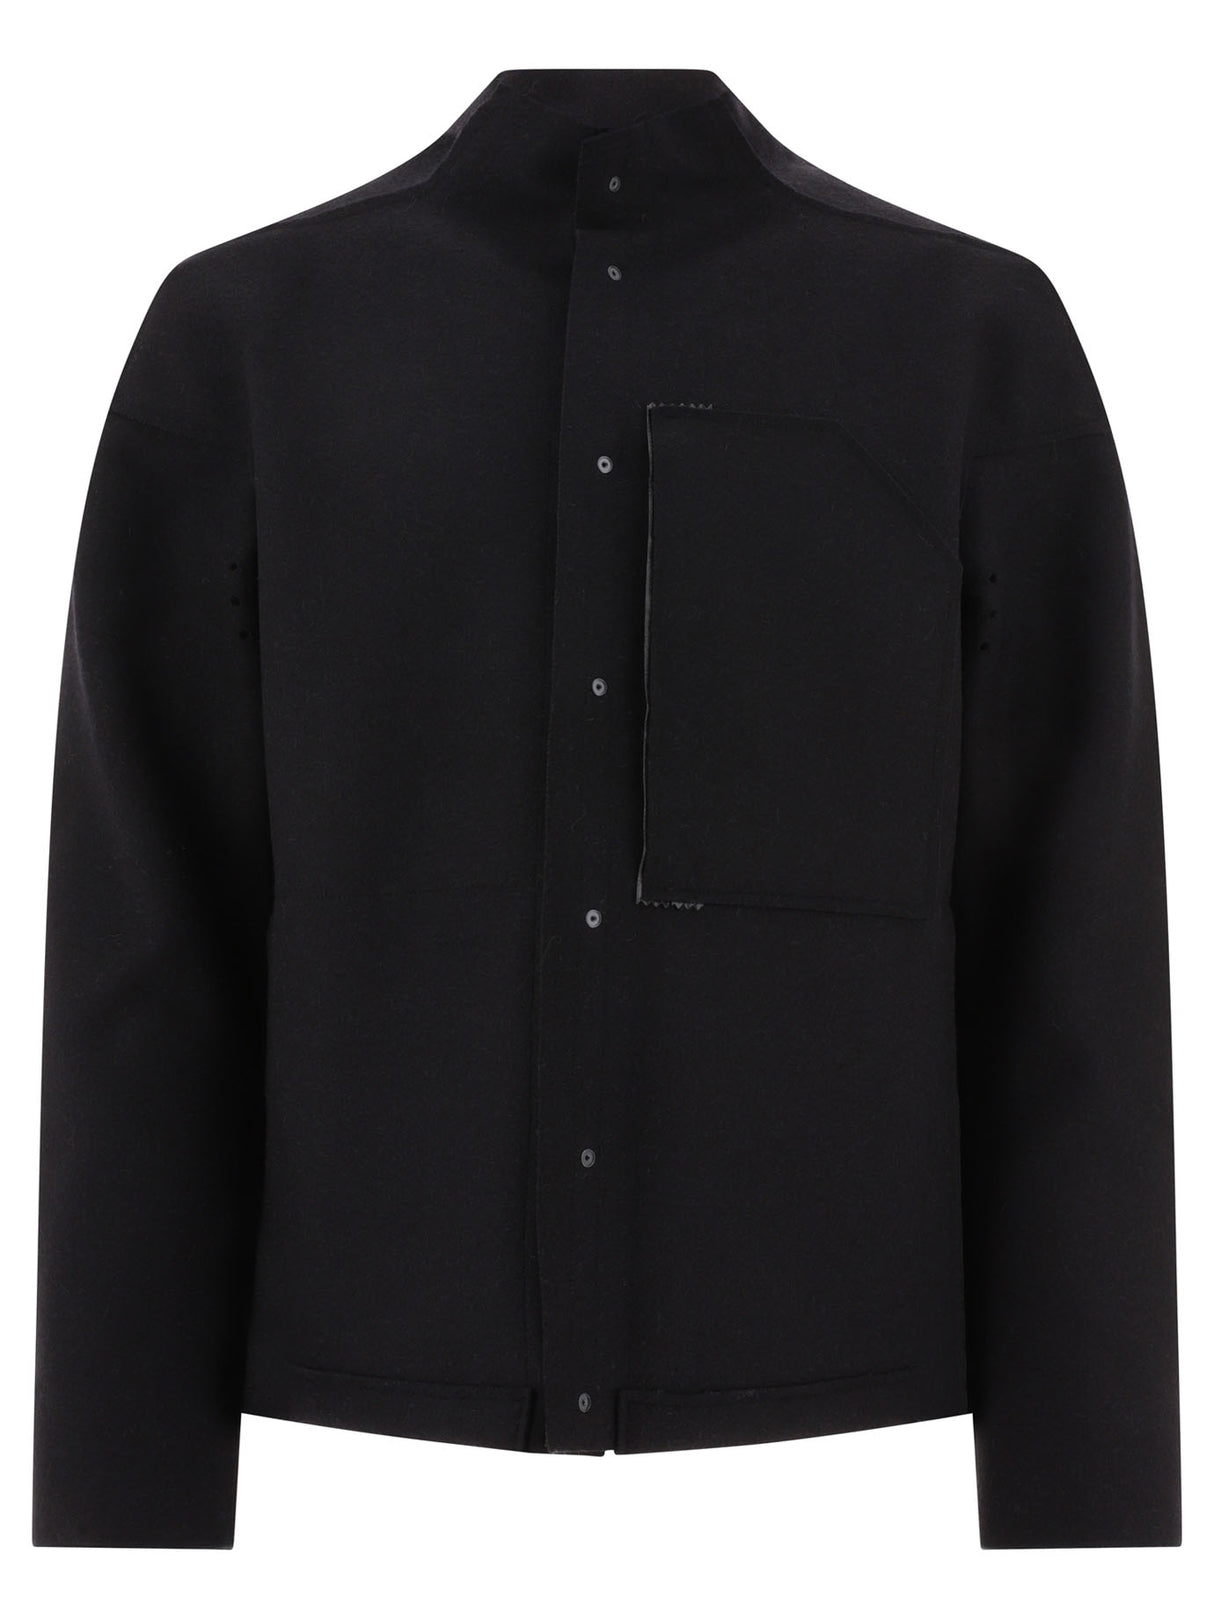 Áo khoác lông cừu đen nam FW23 từ ACRONYM